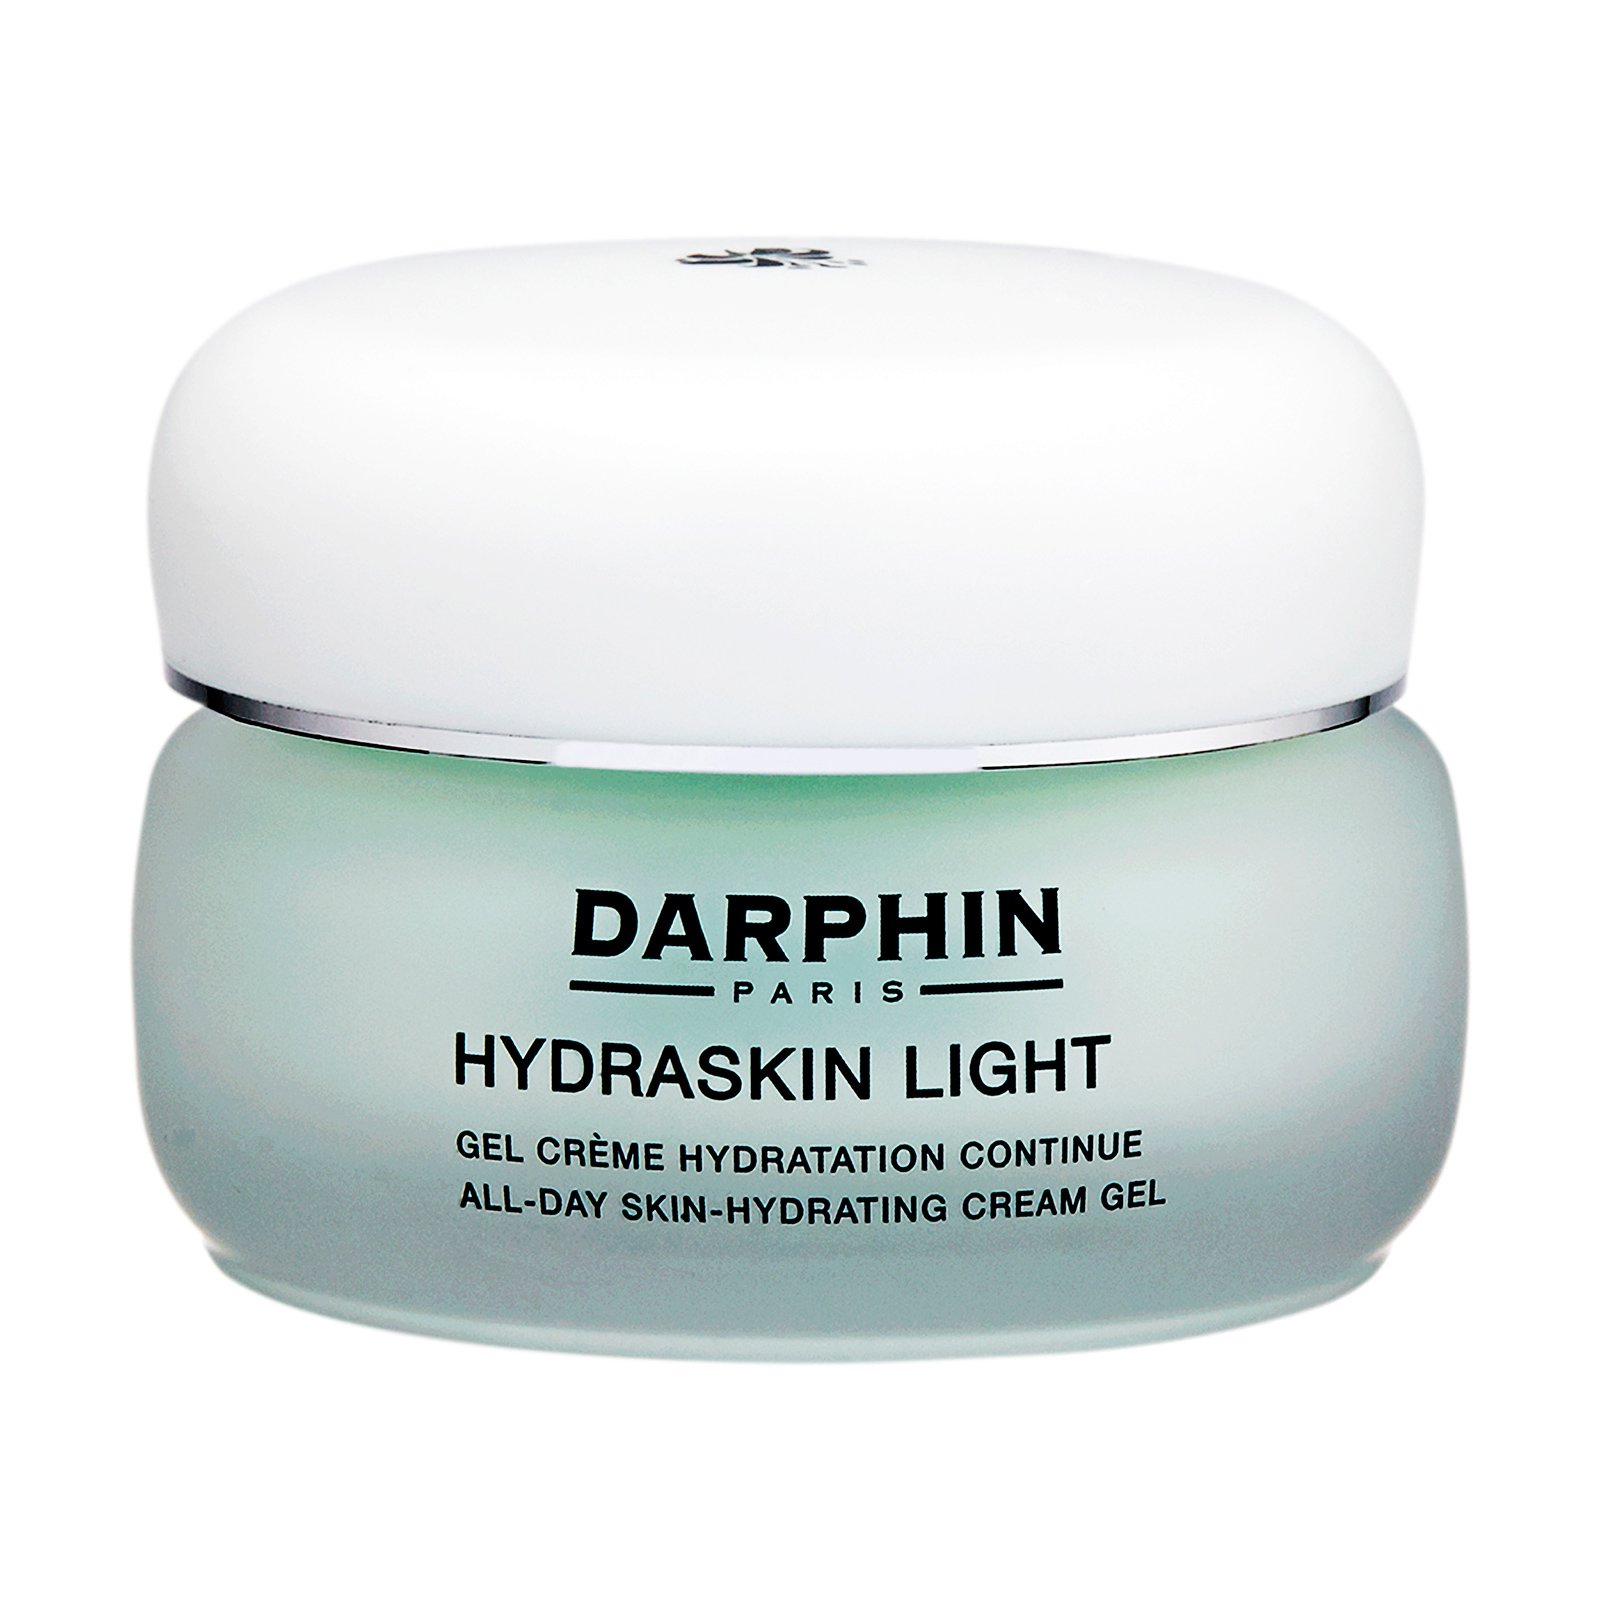 Hydraskin Light All-Day Skin-Hydrating Cream Gel